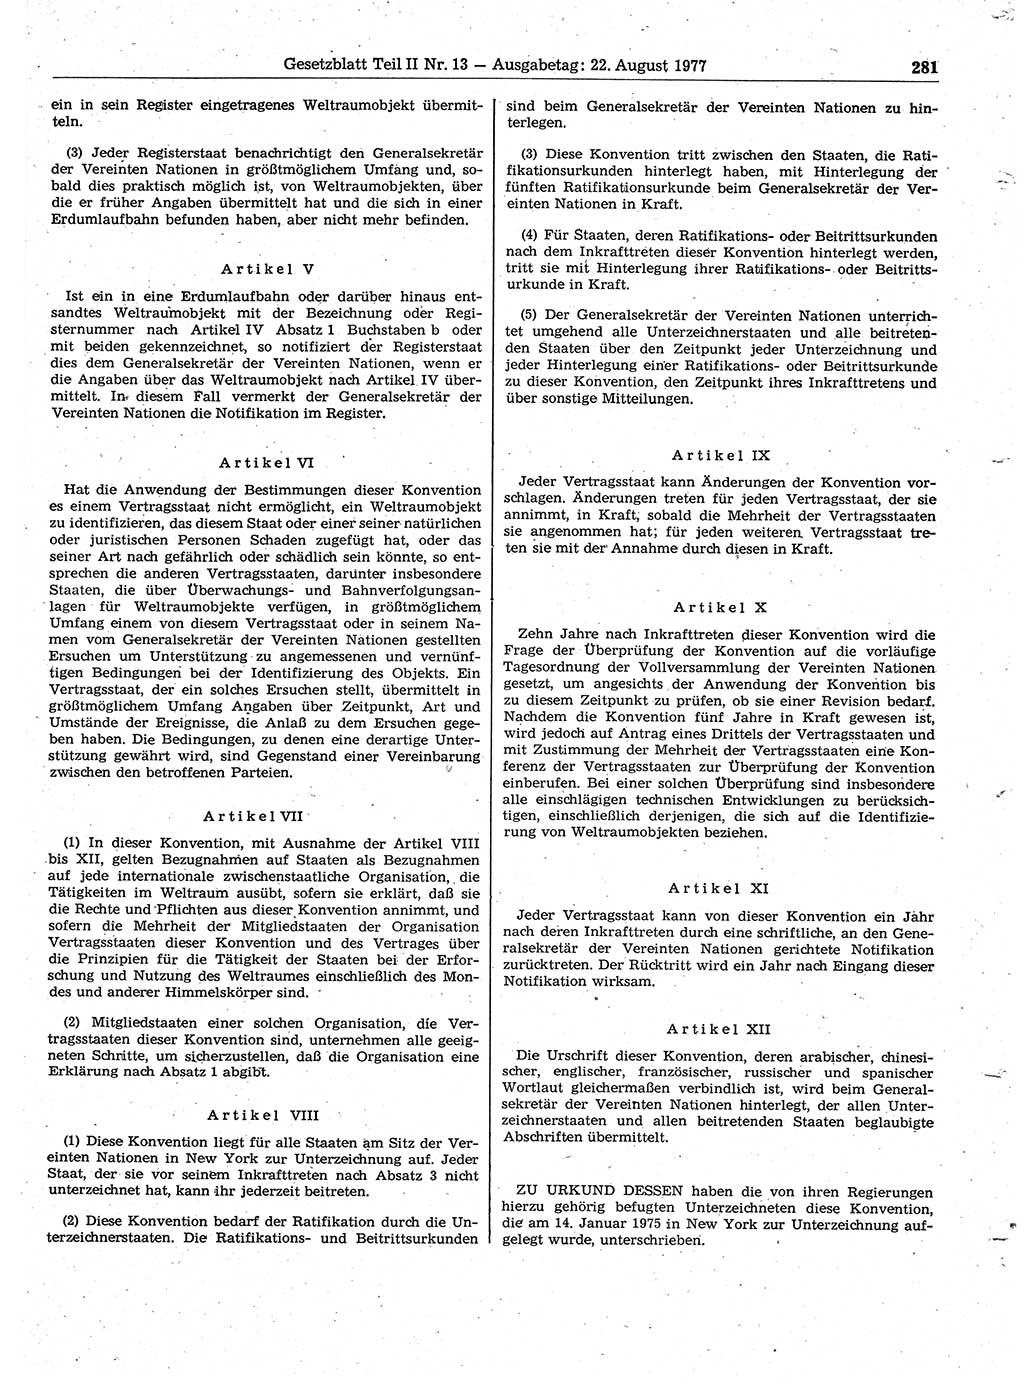 Gesetzblatt (GBl.) der Deutschen Demokratischen Republik (DDR) Teil ⅠⅠ 1977, Seite 281 (GBl. DDR ⅠⅠ 1977, S. 281)